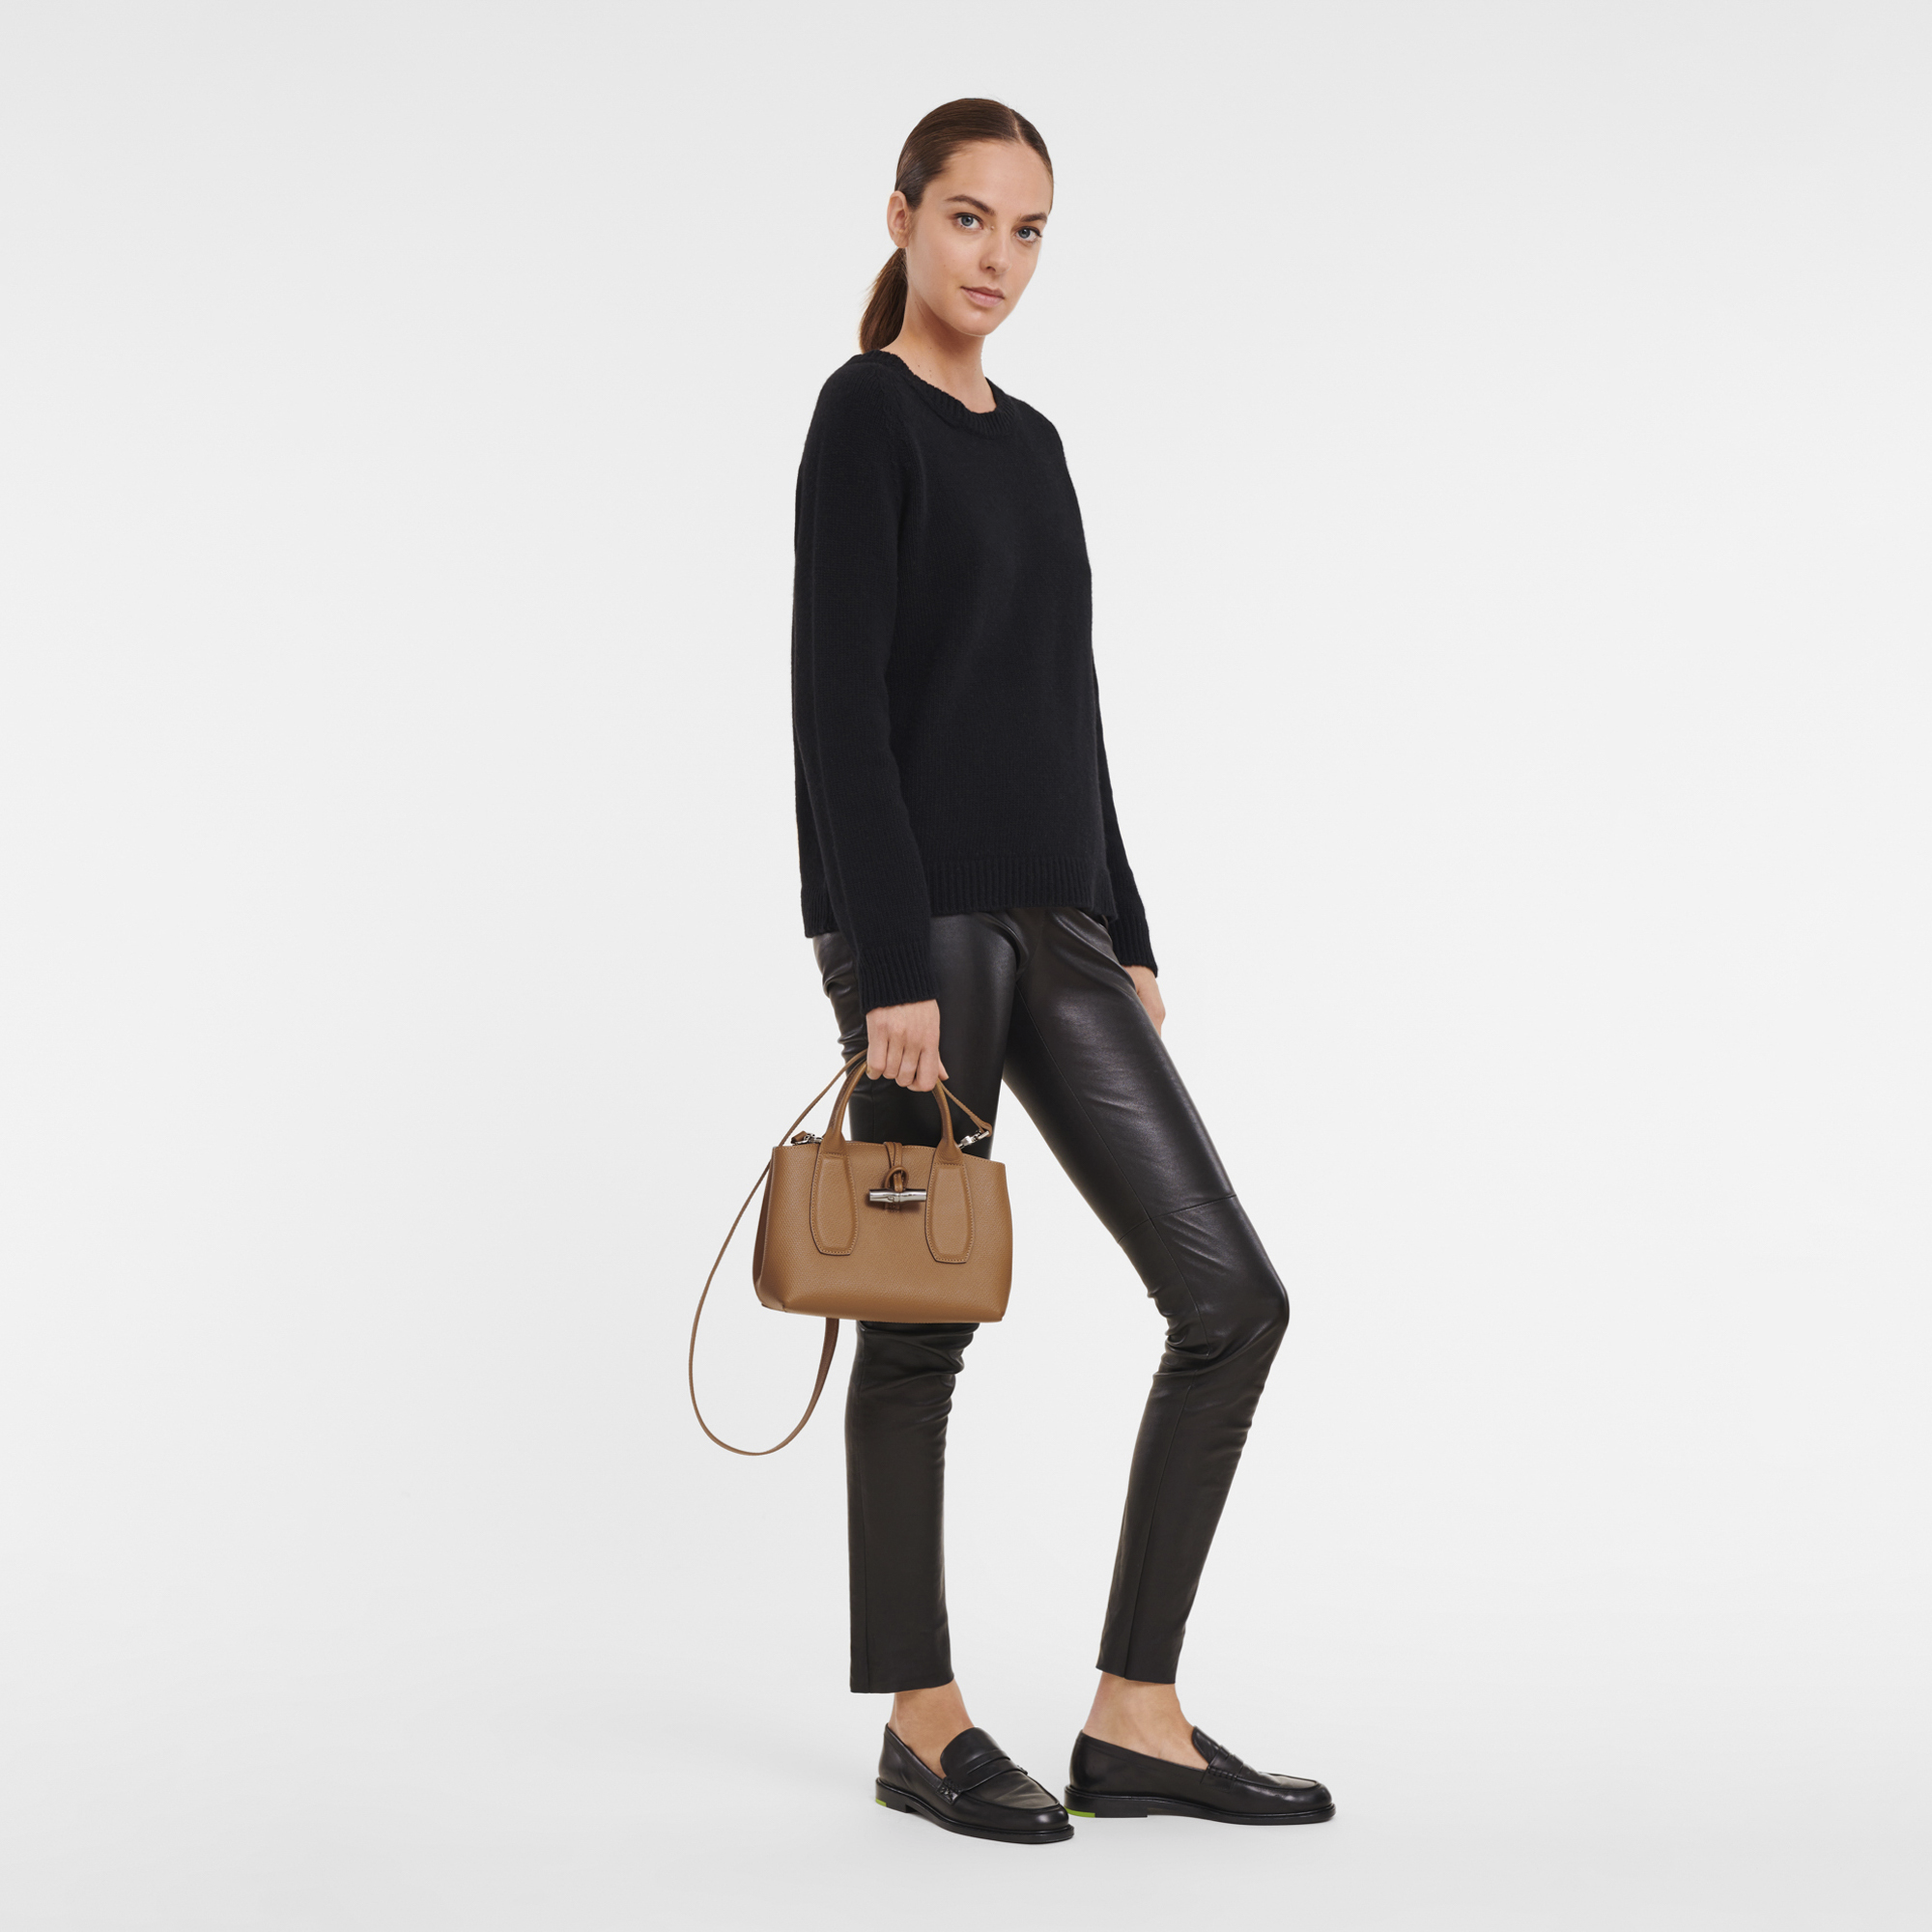 Longchamp Roseau Bag Review 